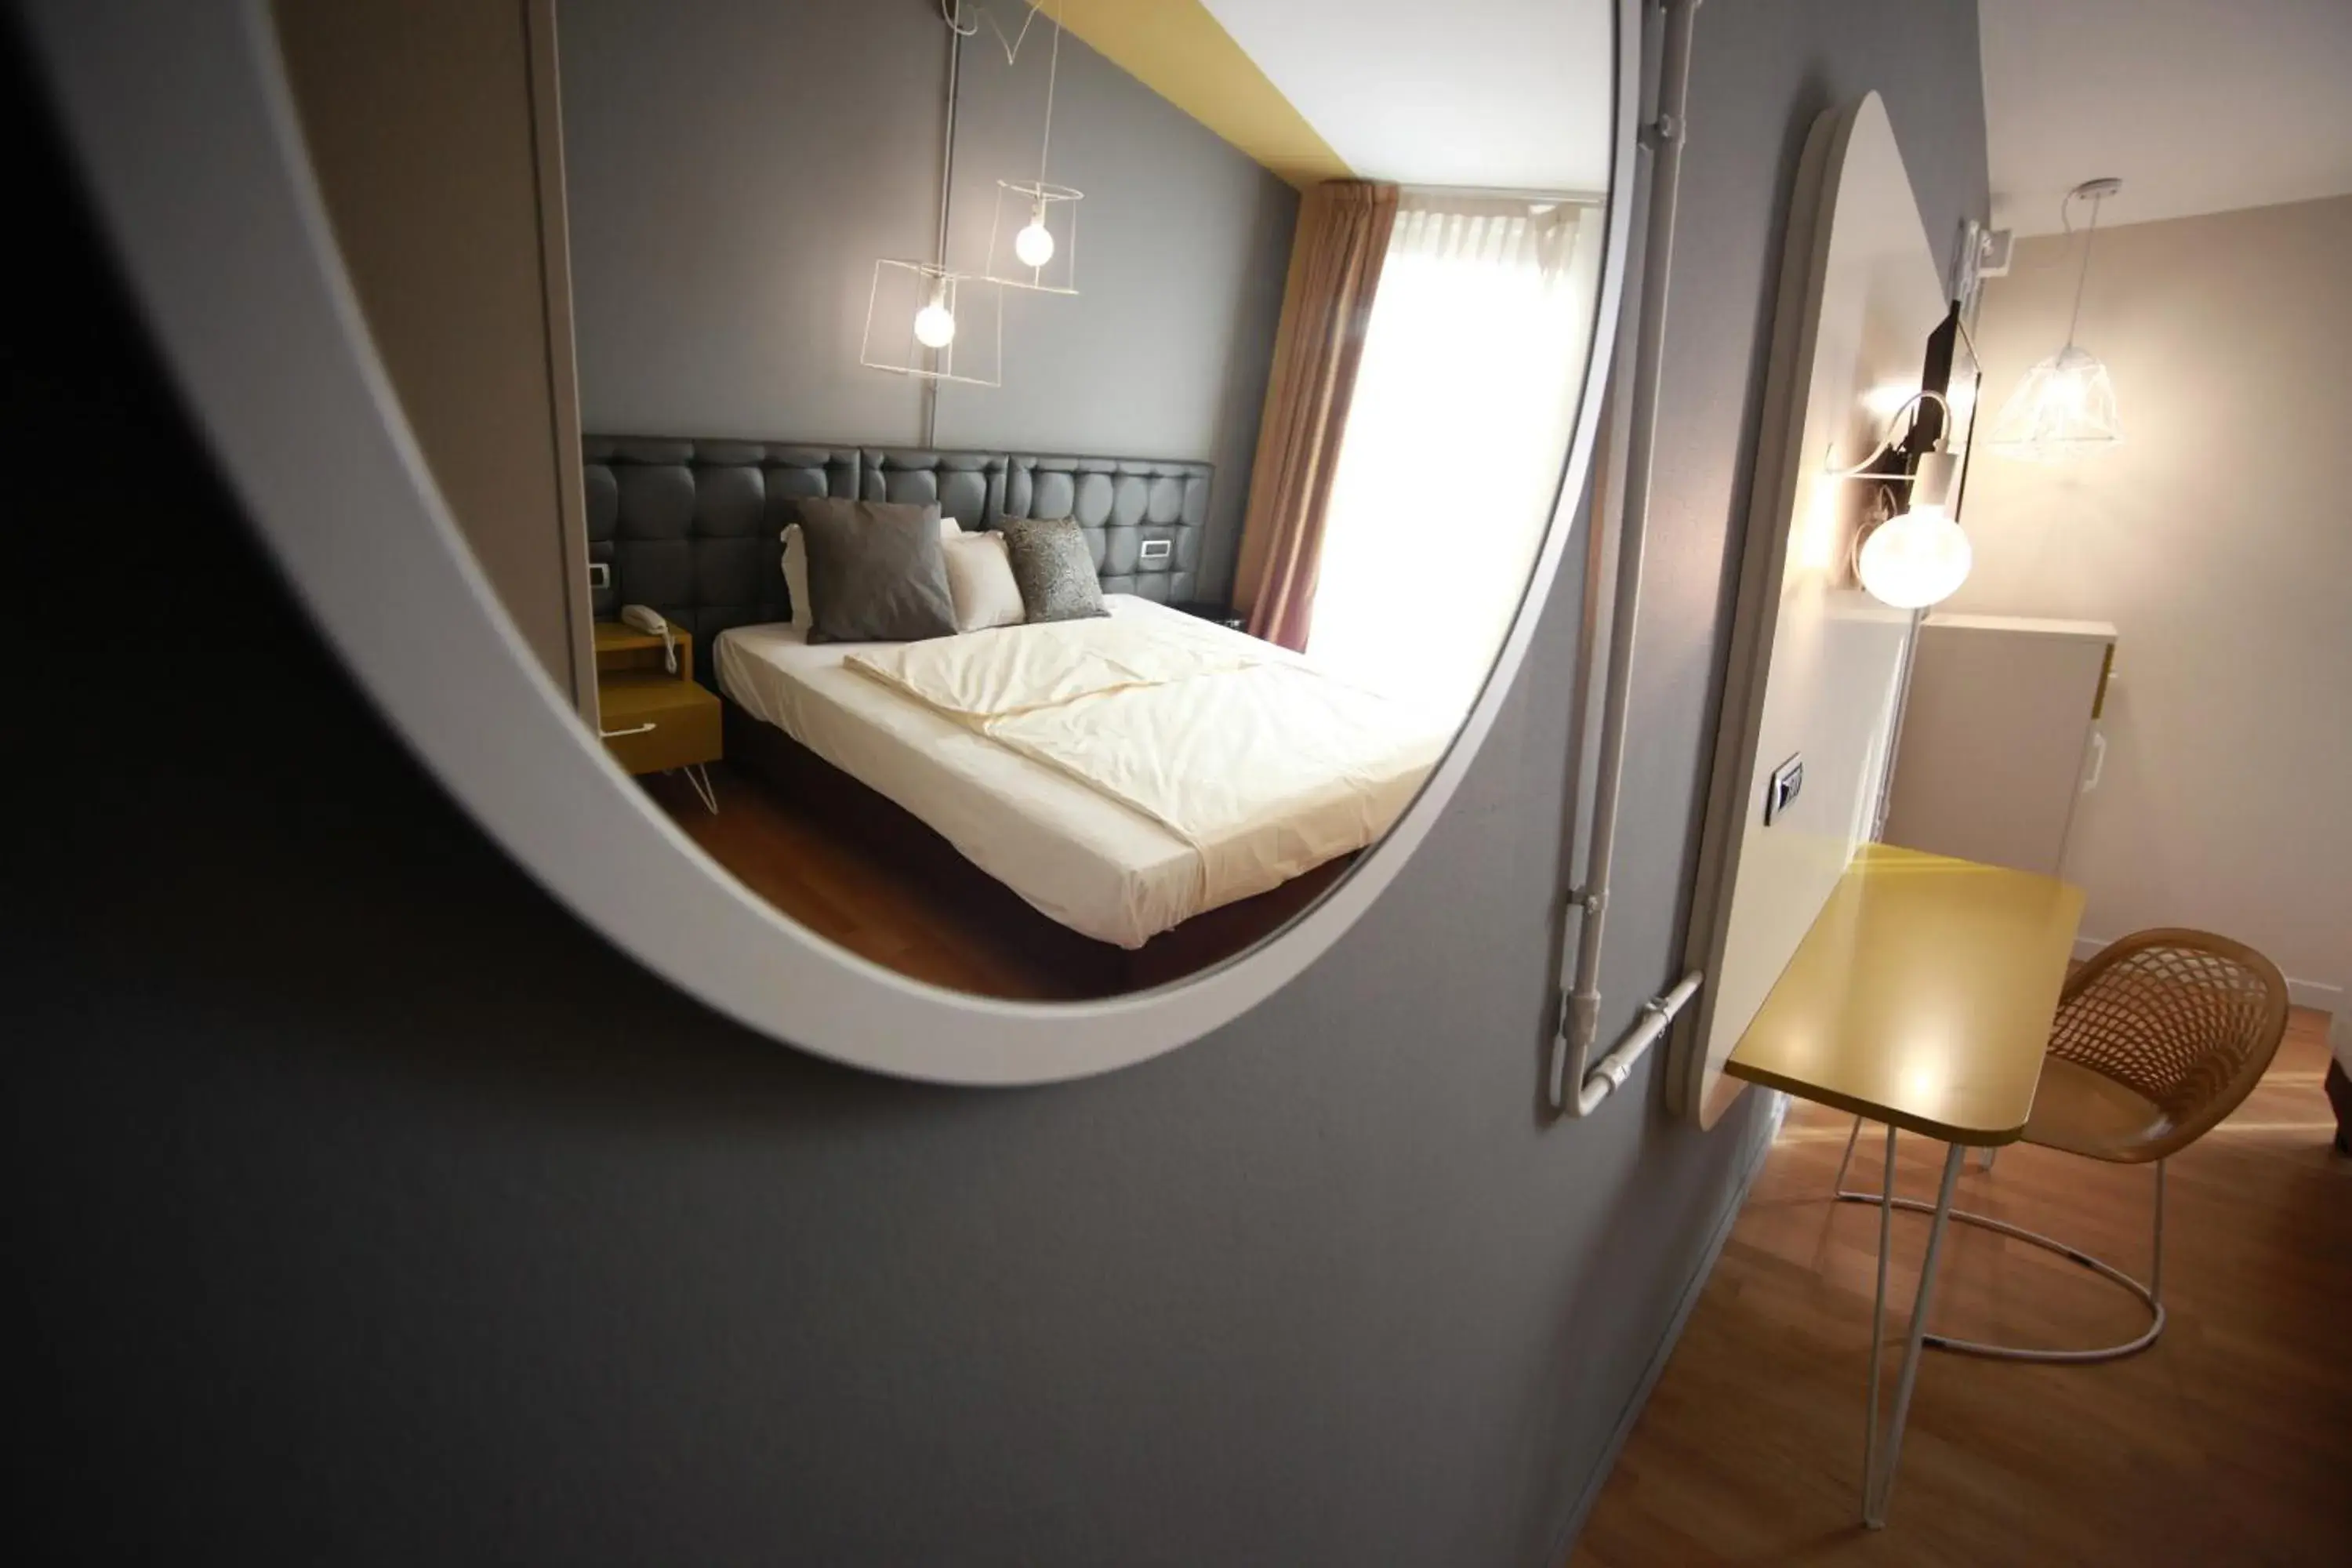 Photo of the whole room, Bathroom in Hotel Corte Quadri